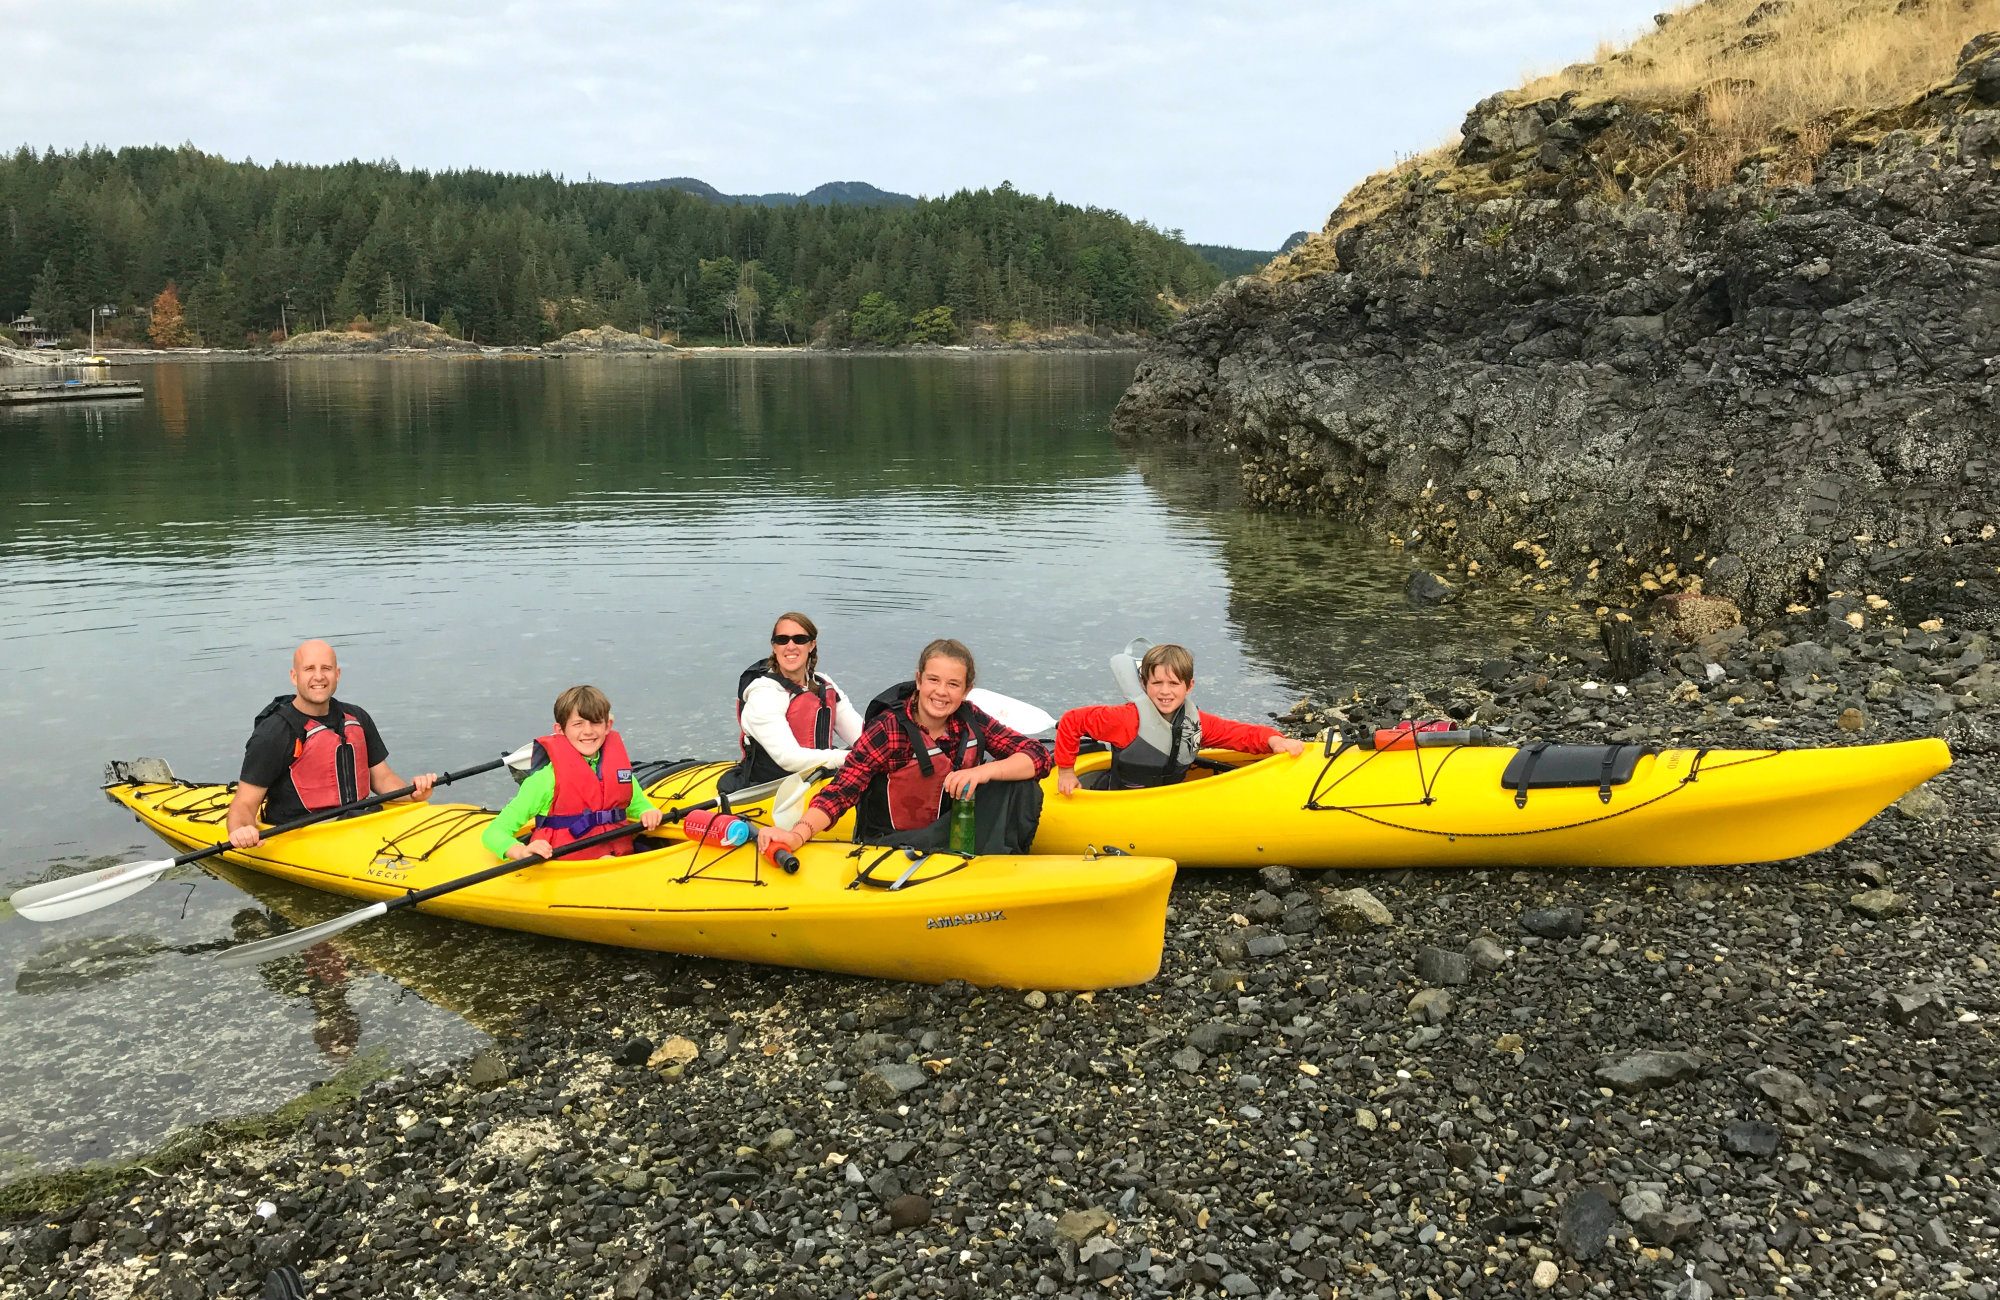 Quadra Island Kayaks, Quadra, Quadra Island, Quadra Island Kayaking, Quadra Island Kayak rental, Discover Islands Kayaking trips, Vancouver Island Kayak tours, Quadra Island Kayak Tours